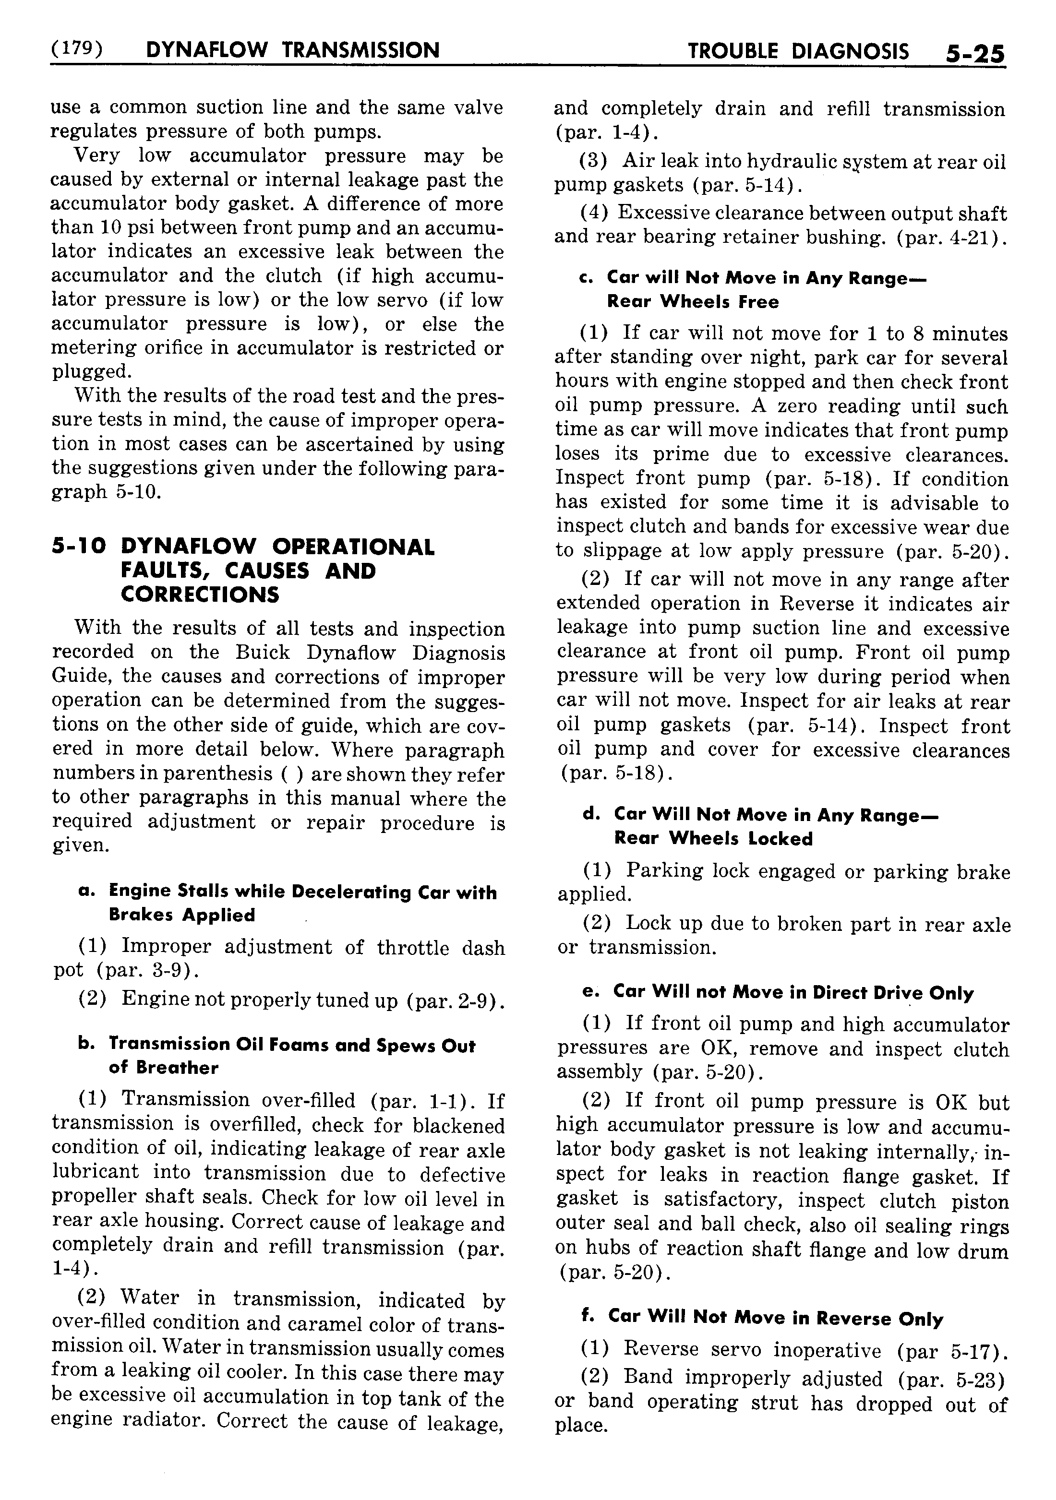 n_06 1954 Buick Shop Manual - Dynaflow-025-025.jpg